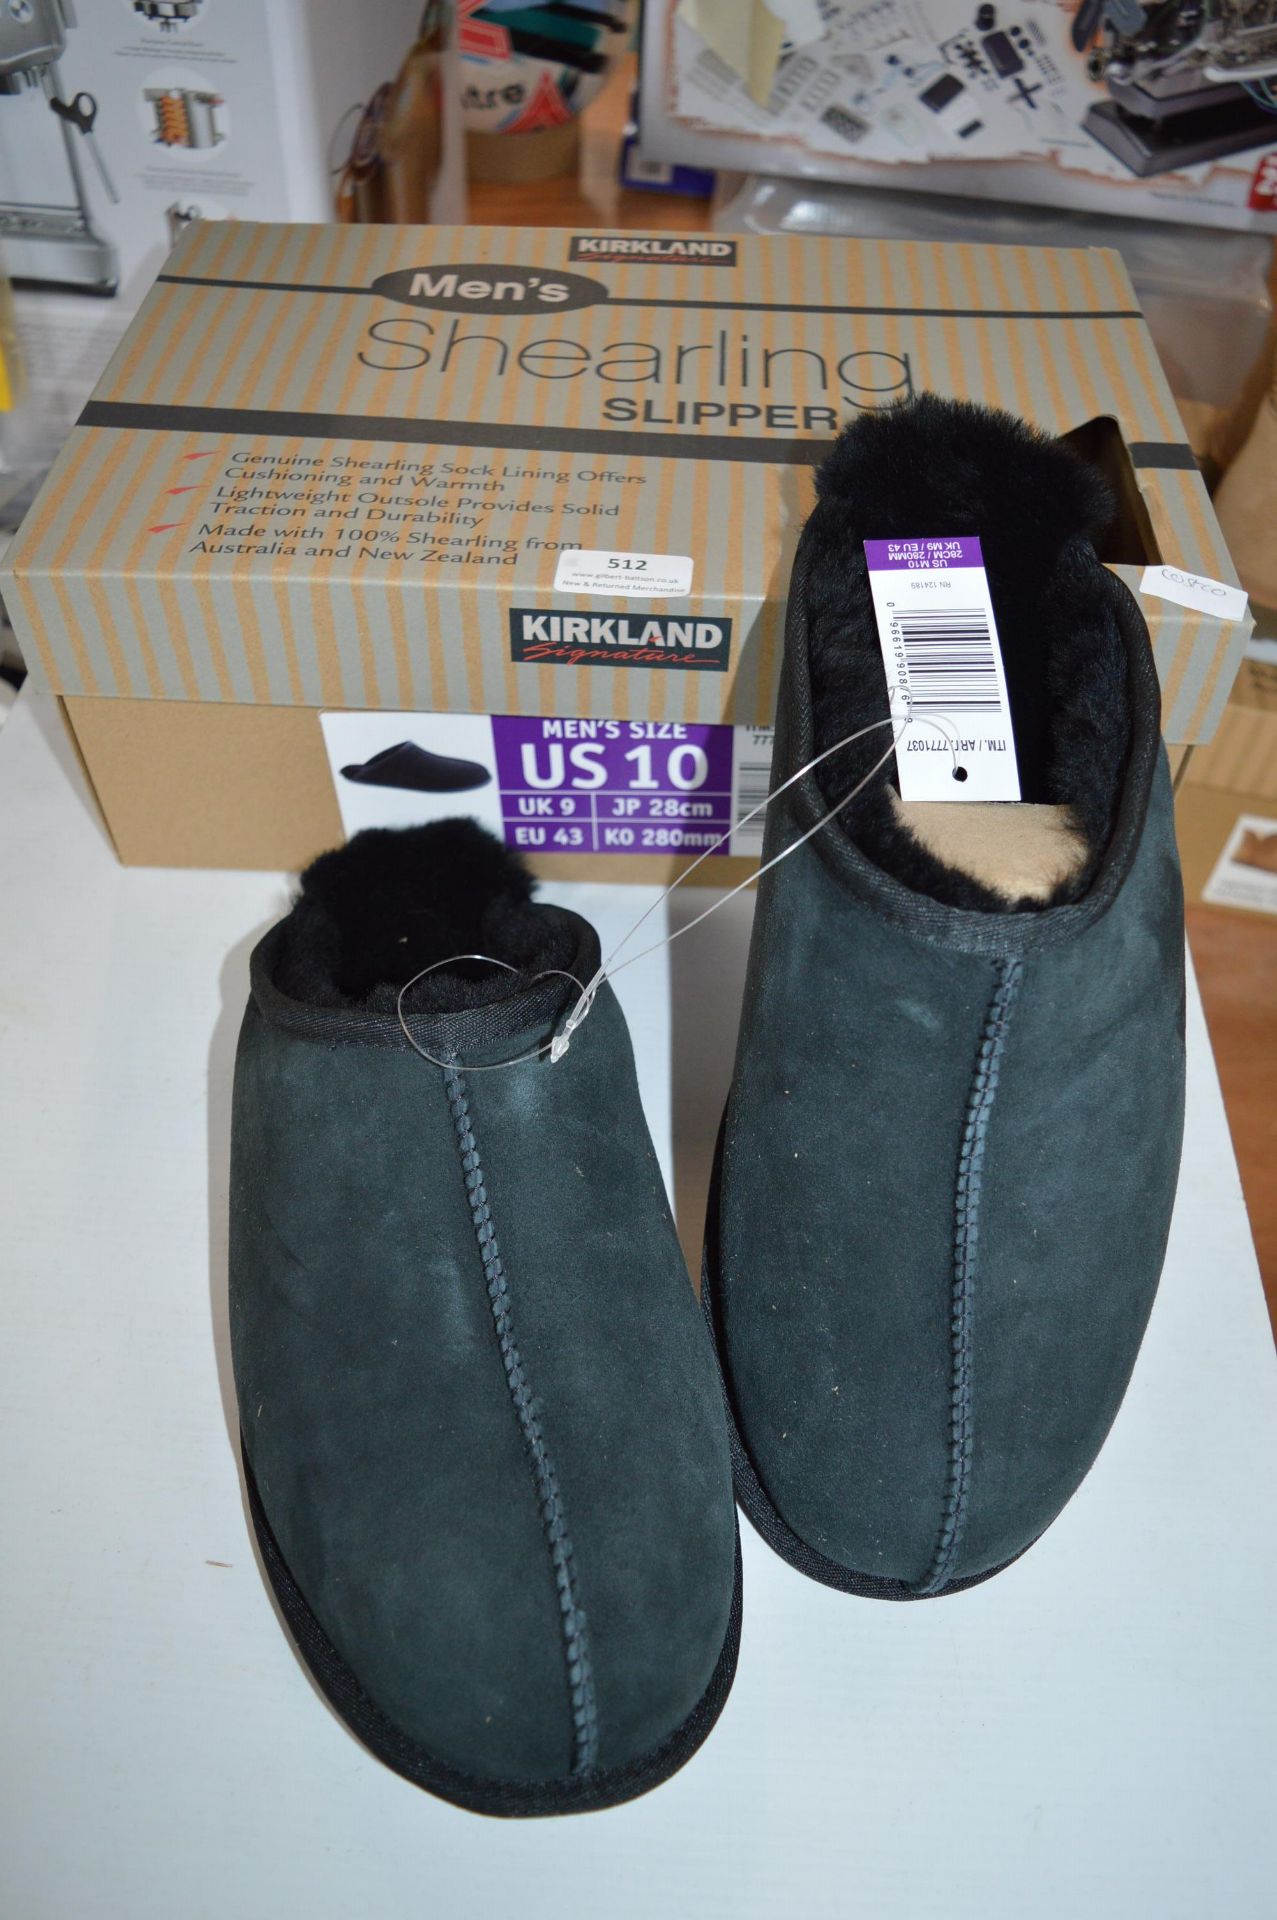 *Kirkland Men's Shearling Slippers Size: 9